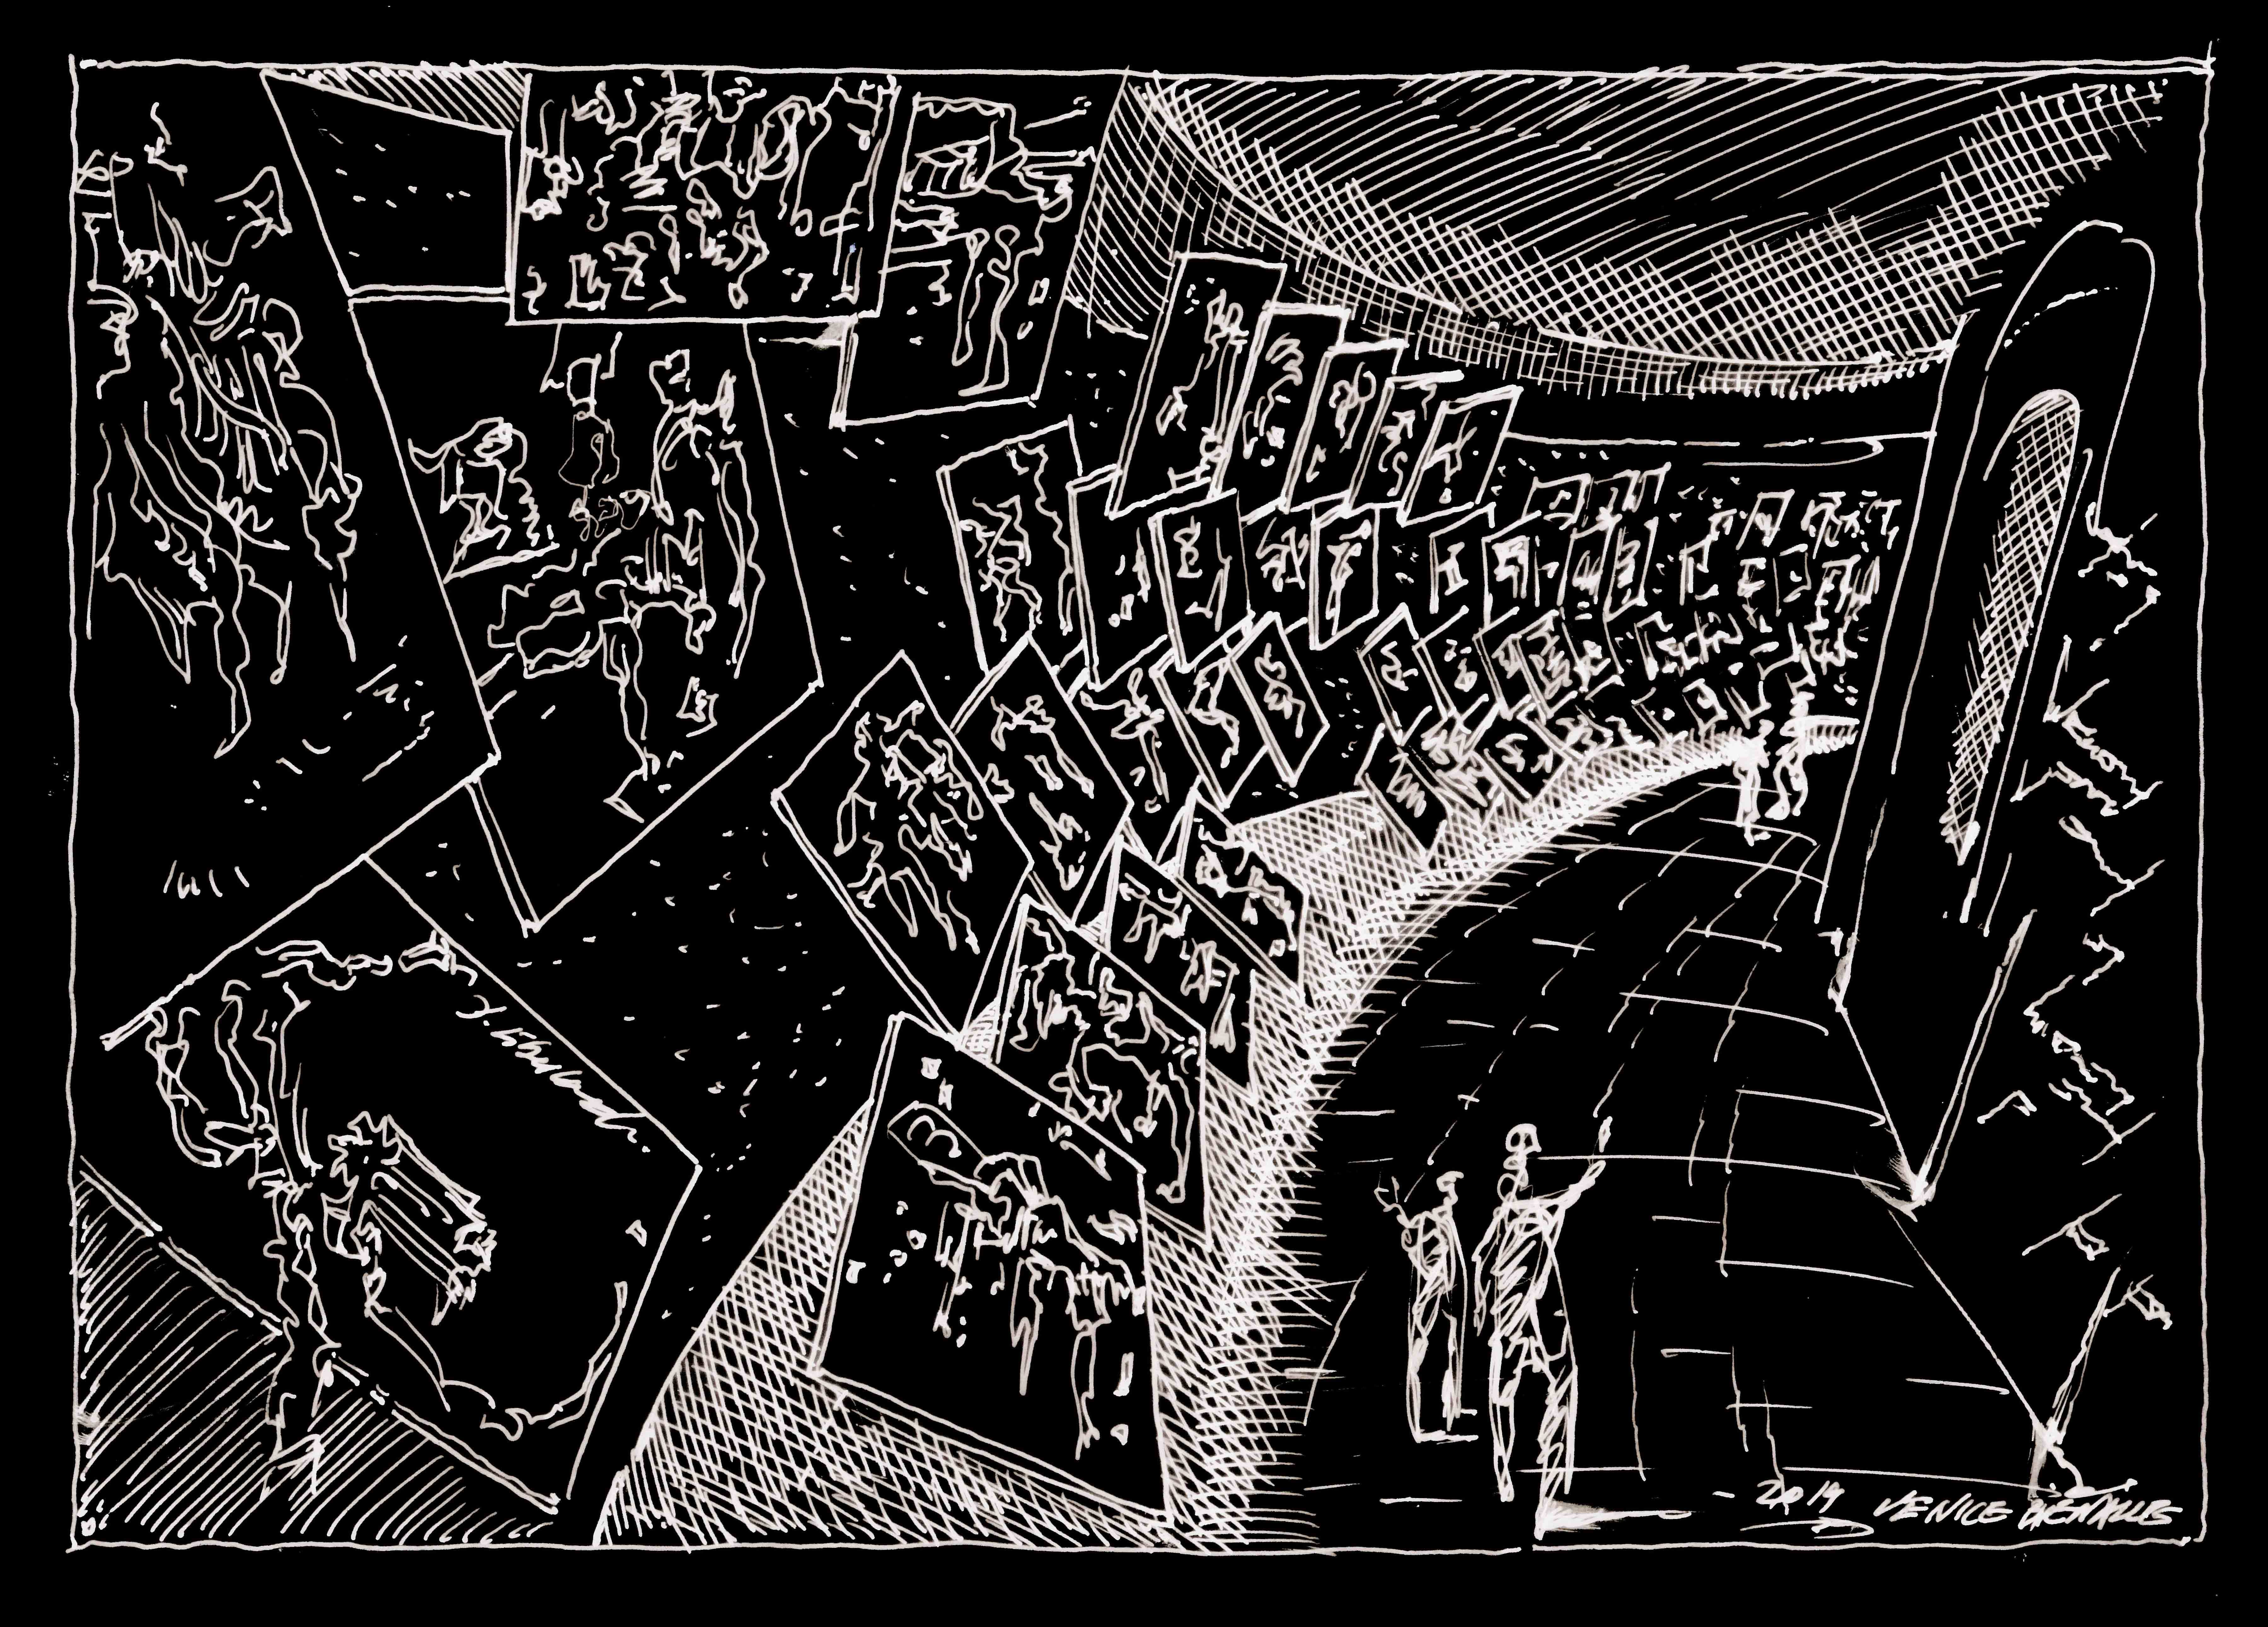 Cento disegni di Libeskind nel Padiglione Venezia